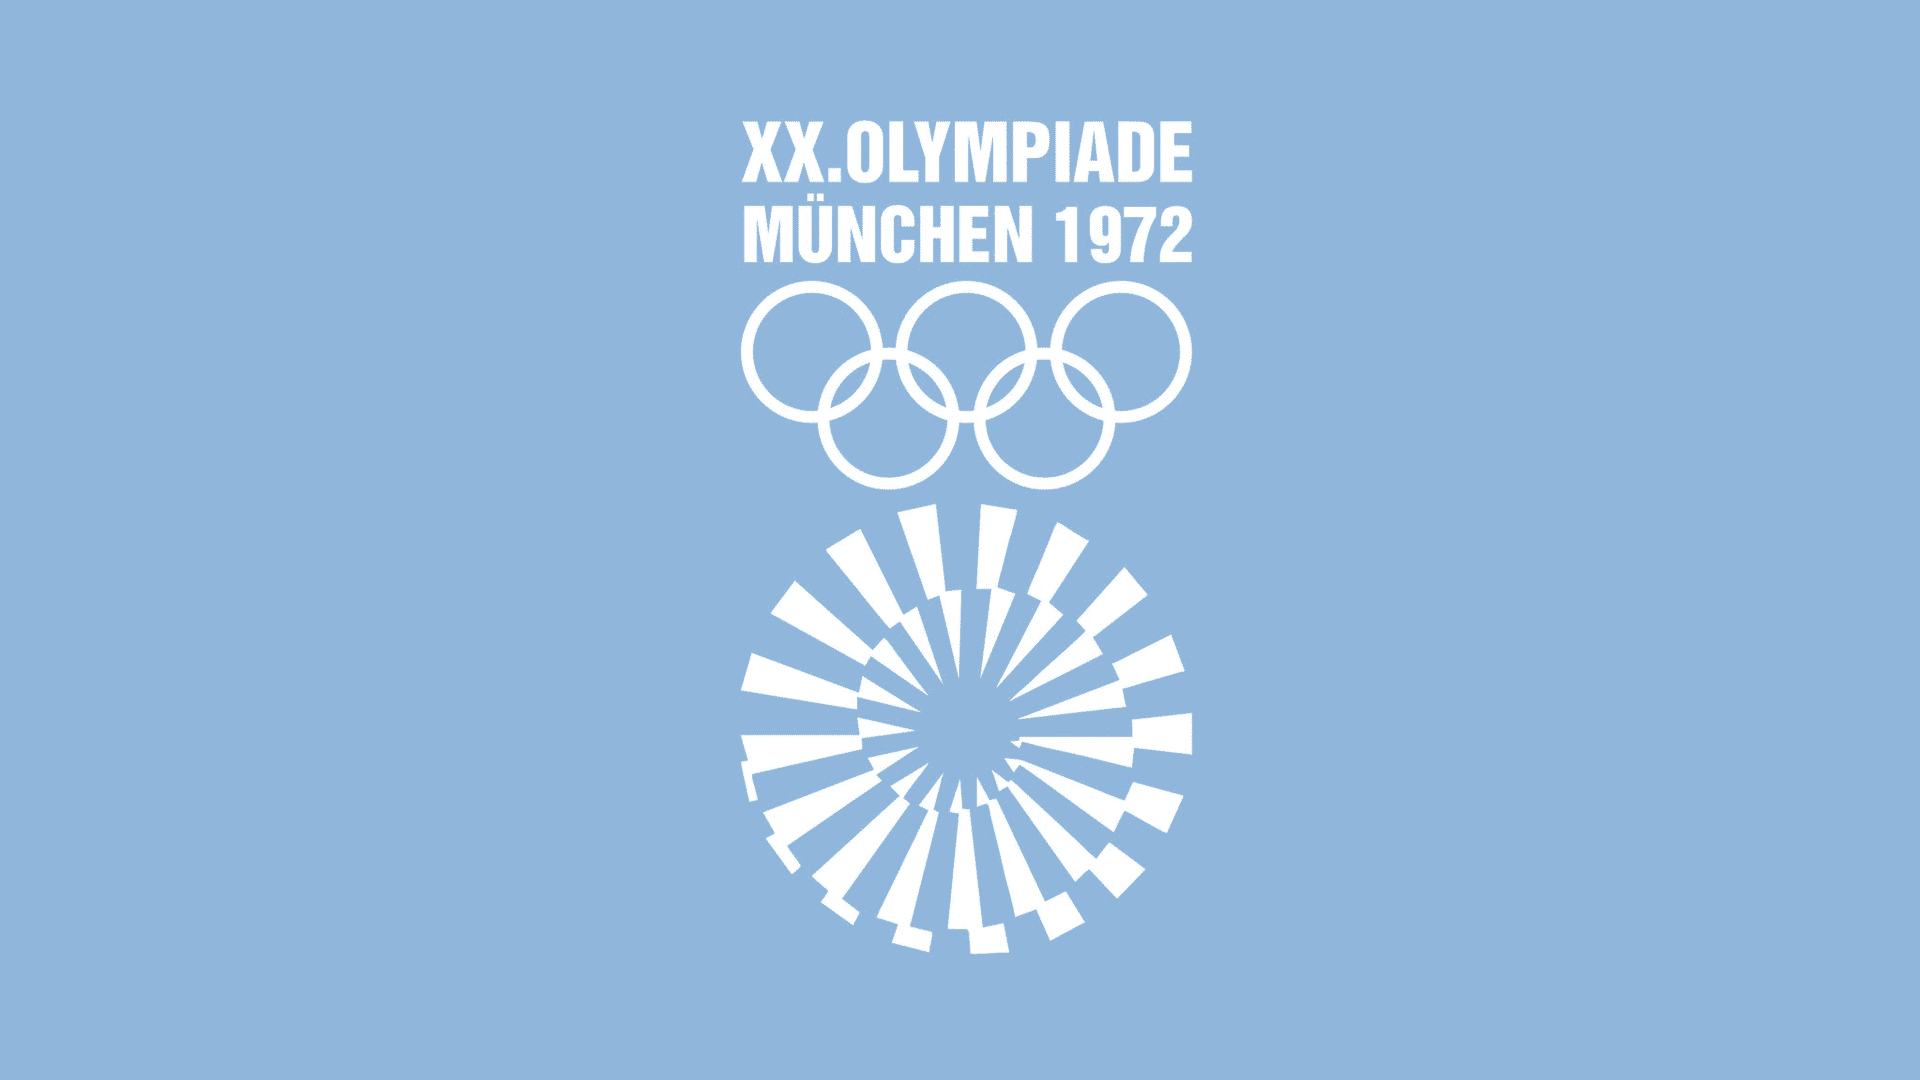 設計專家：這是有史以來最好的奧運會徽 17